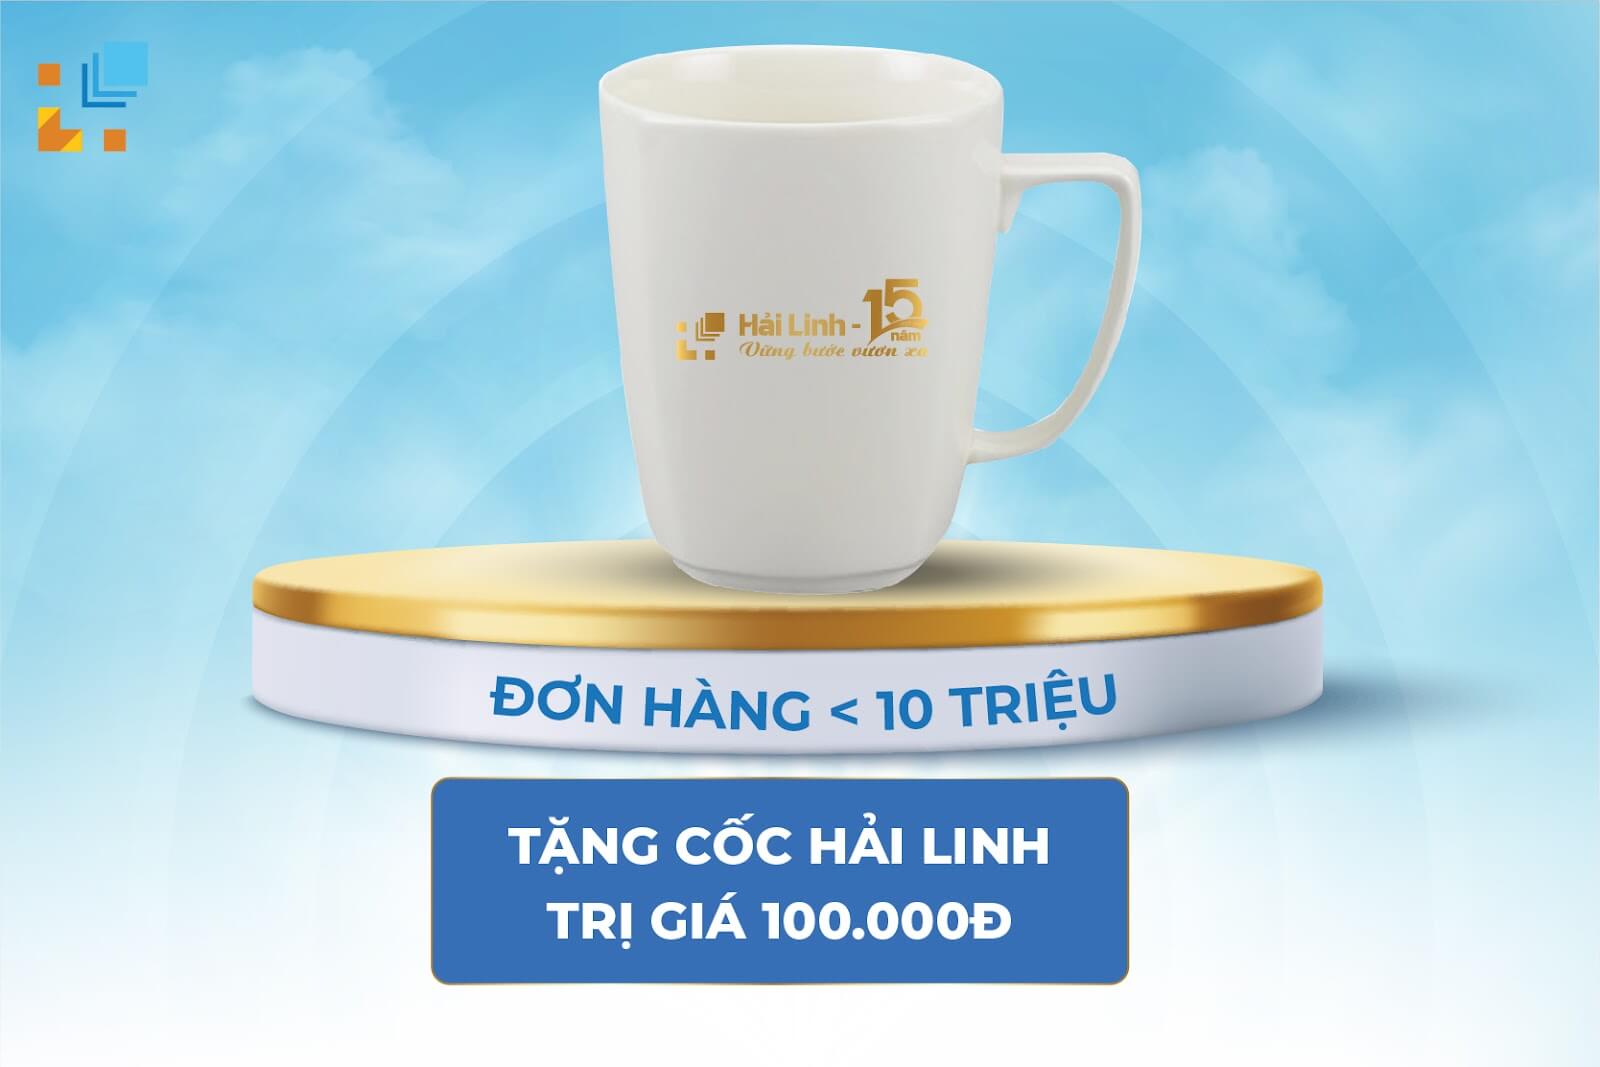 Dai Tiec Mua Sam Thang 10 Tai Hai Linh Sieu Uu Dai Mua La Co Qua 2